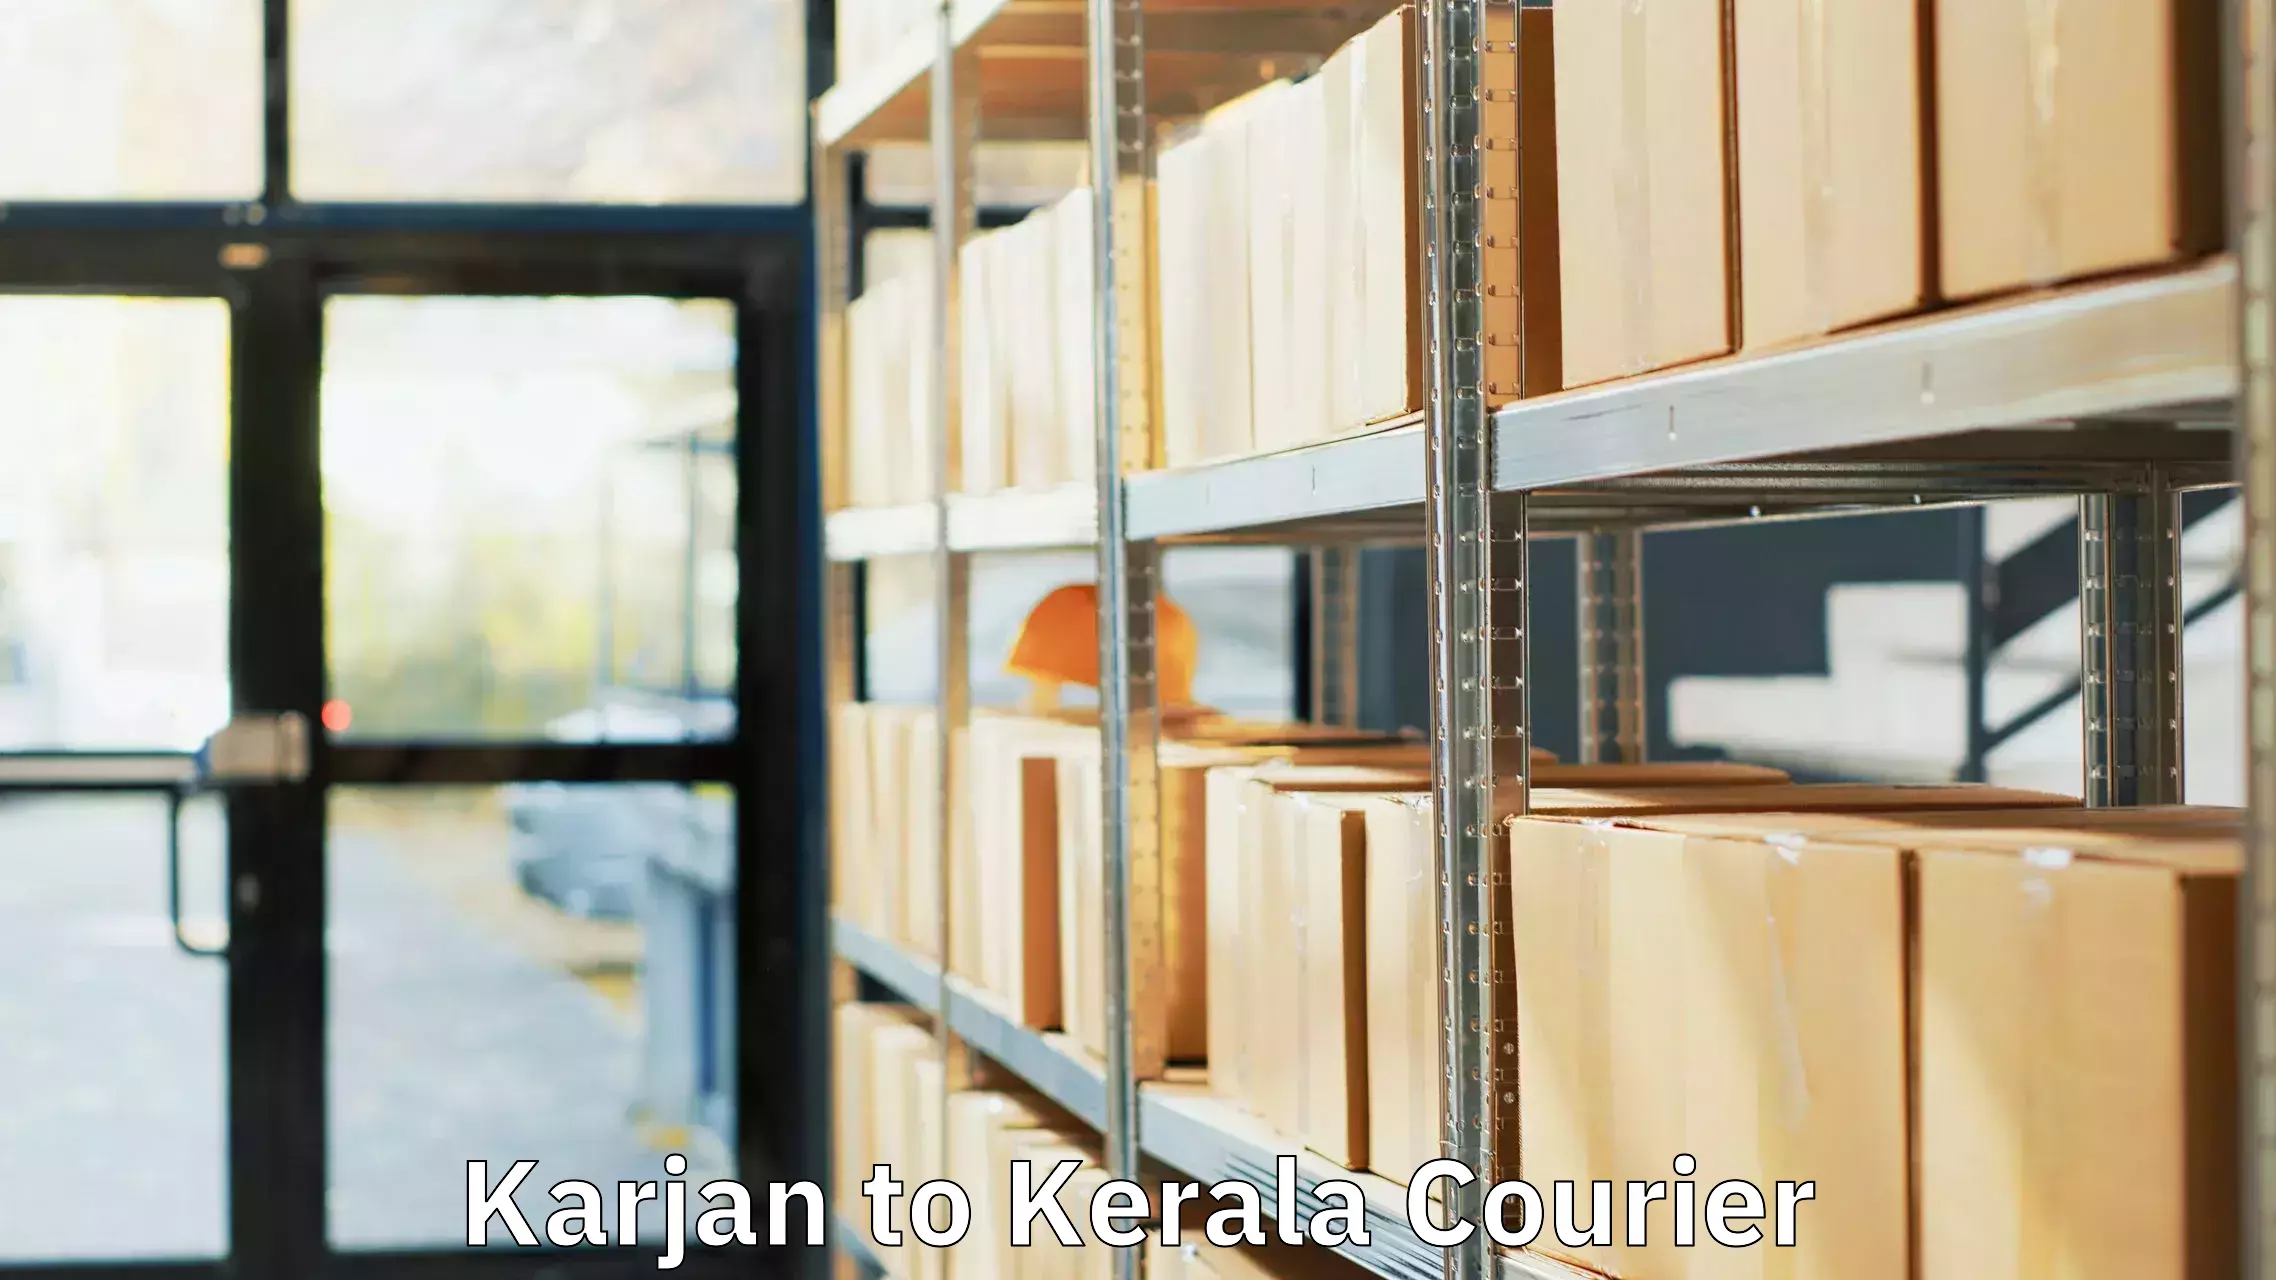 Baggage transport network Karjan to Sreekandapuram